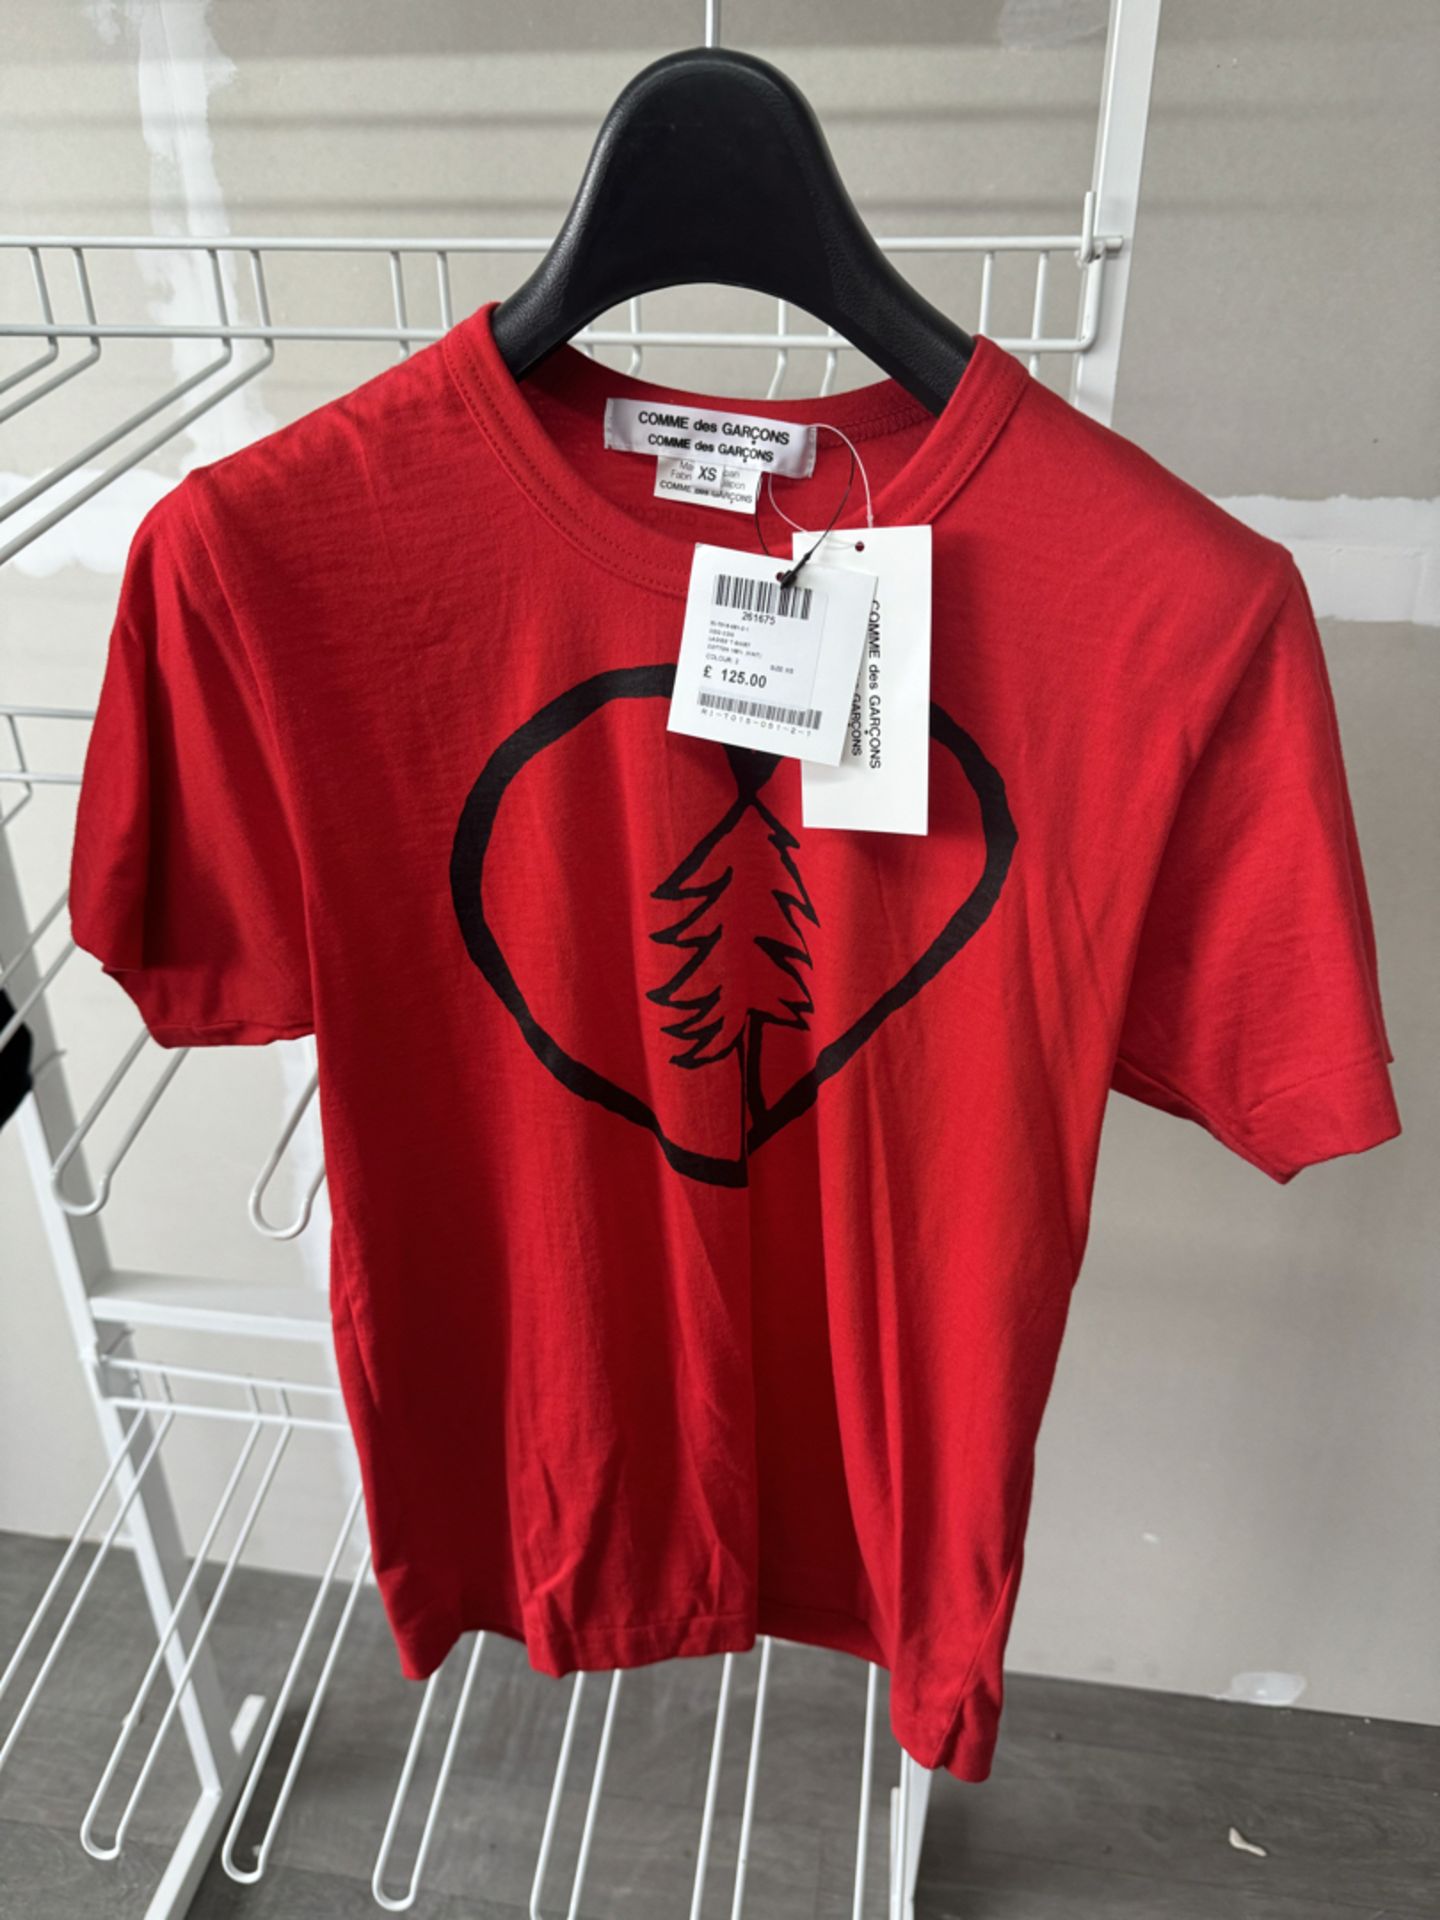 Comme Des GarÃ§ons Ladies T-Shirt - New with Tags - Size XS - RRP Â£125 - NO VAT!